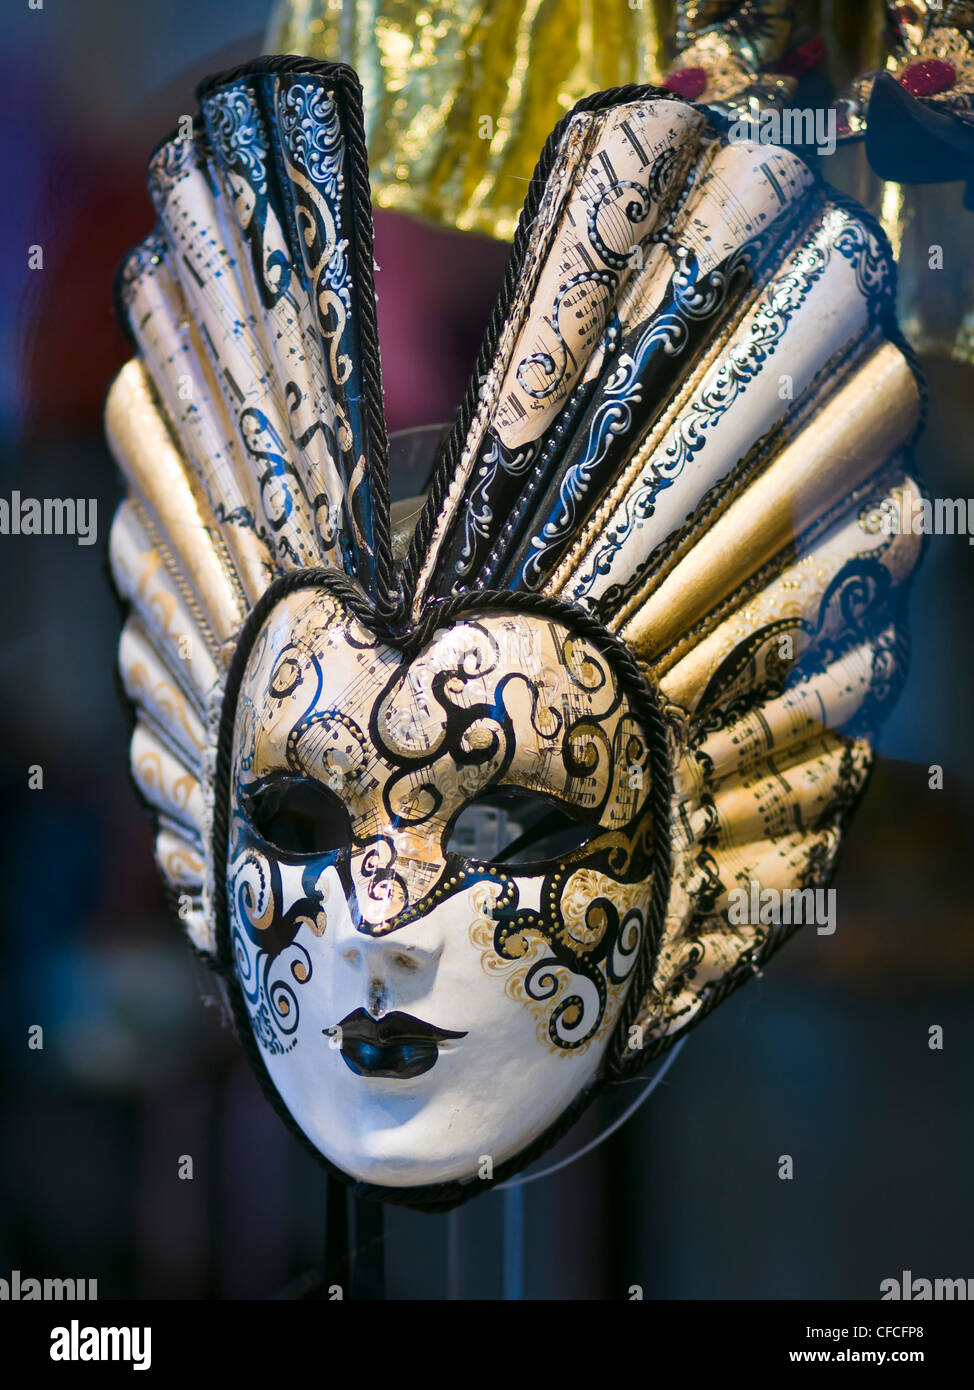 Karneval in Venedig Maske - Venedig, Venezia, Italien, Europa Stockfoto